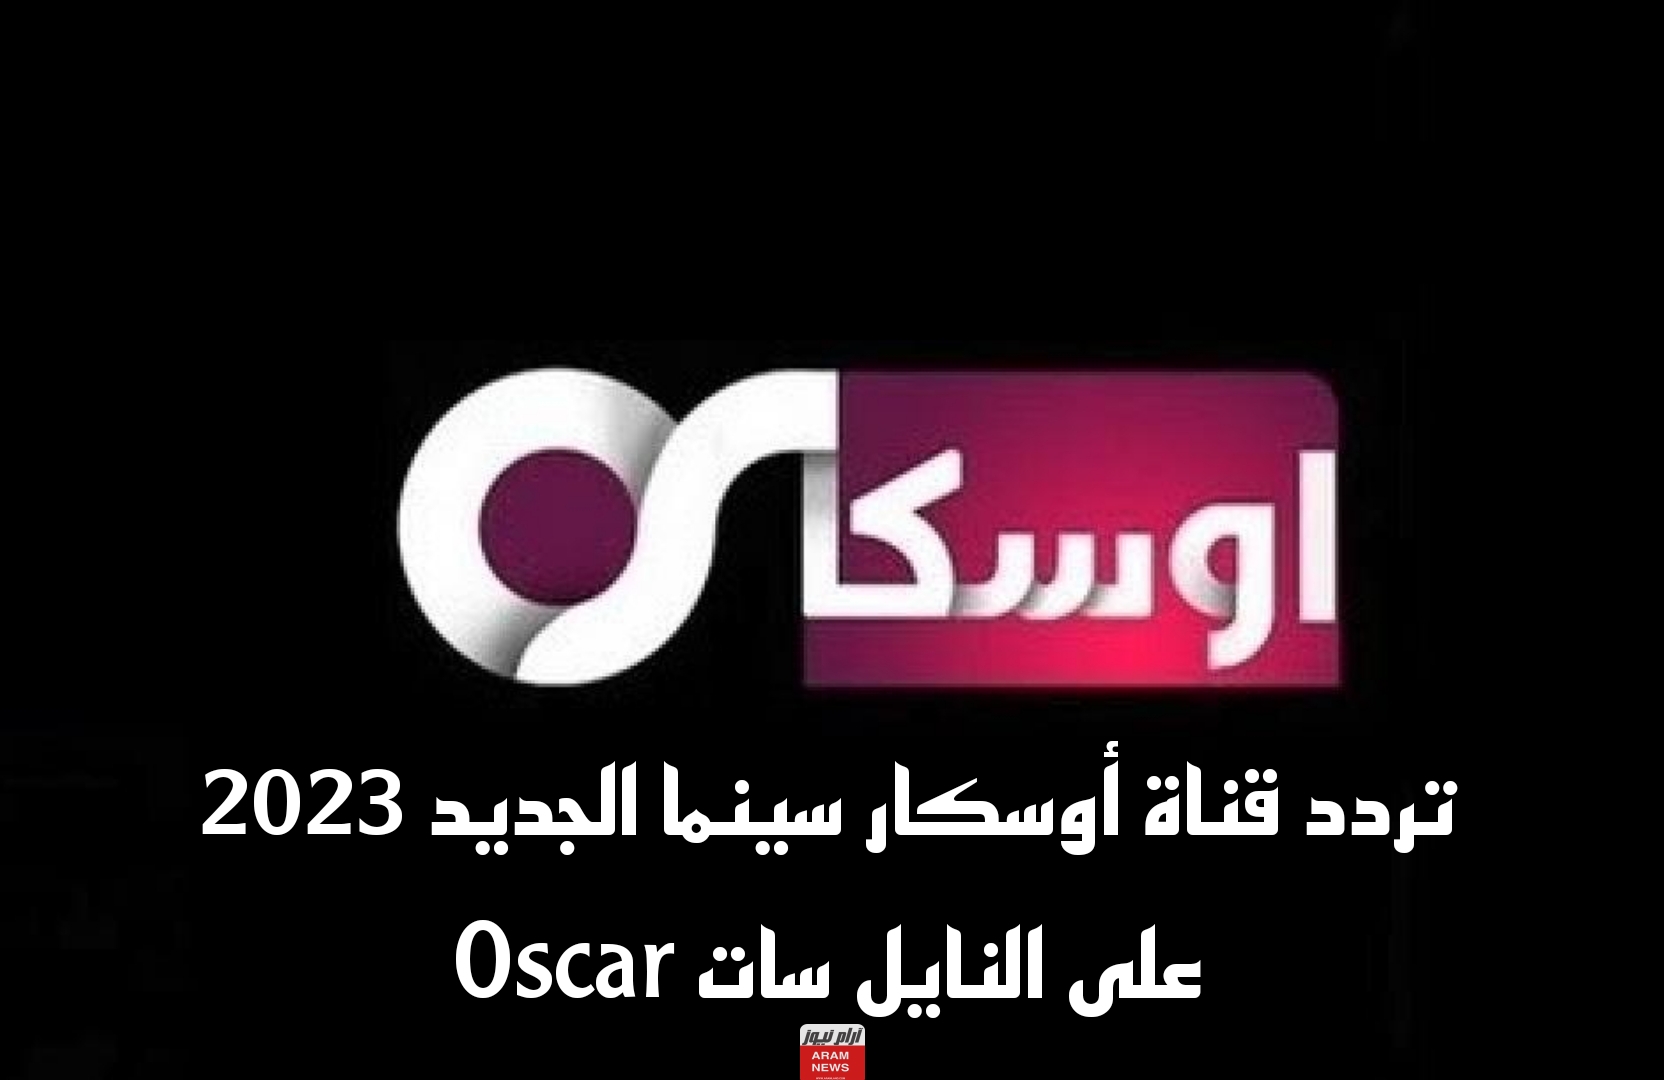 تردد قناة أوسكار سينما الجديد 2023 على النايل سات Oscar